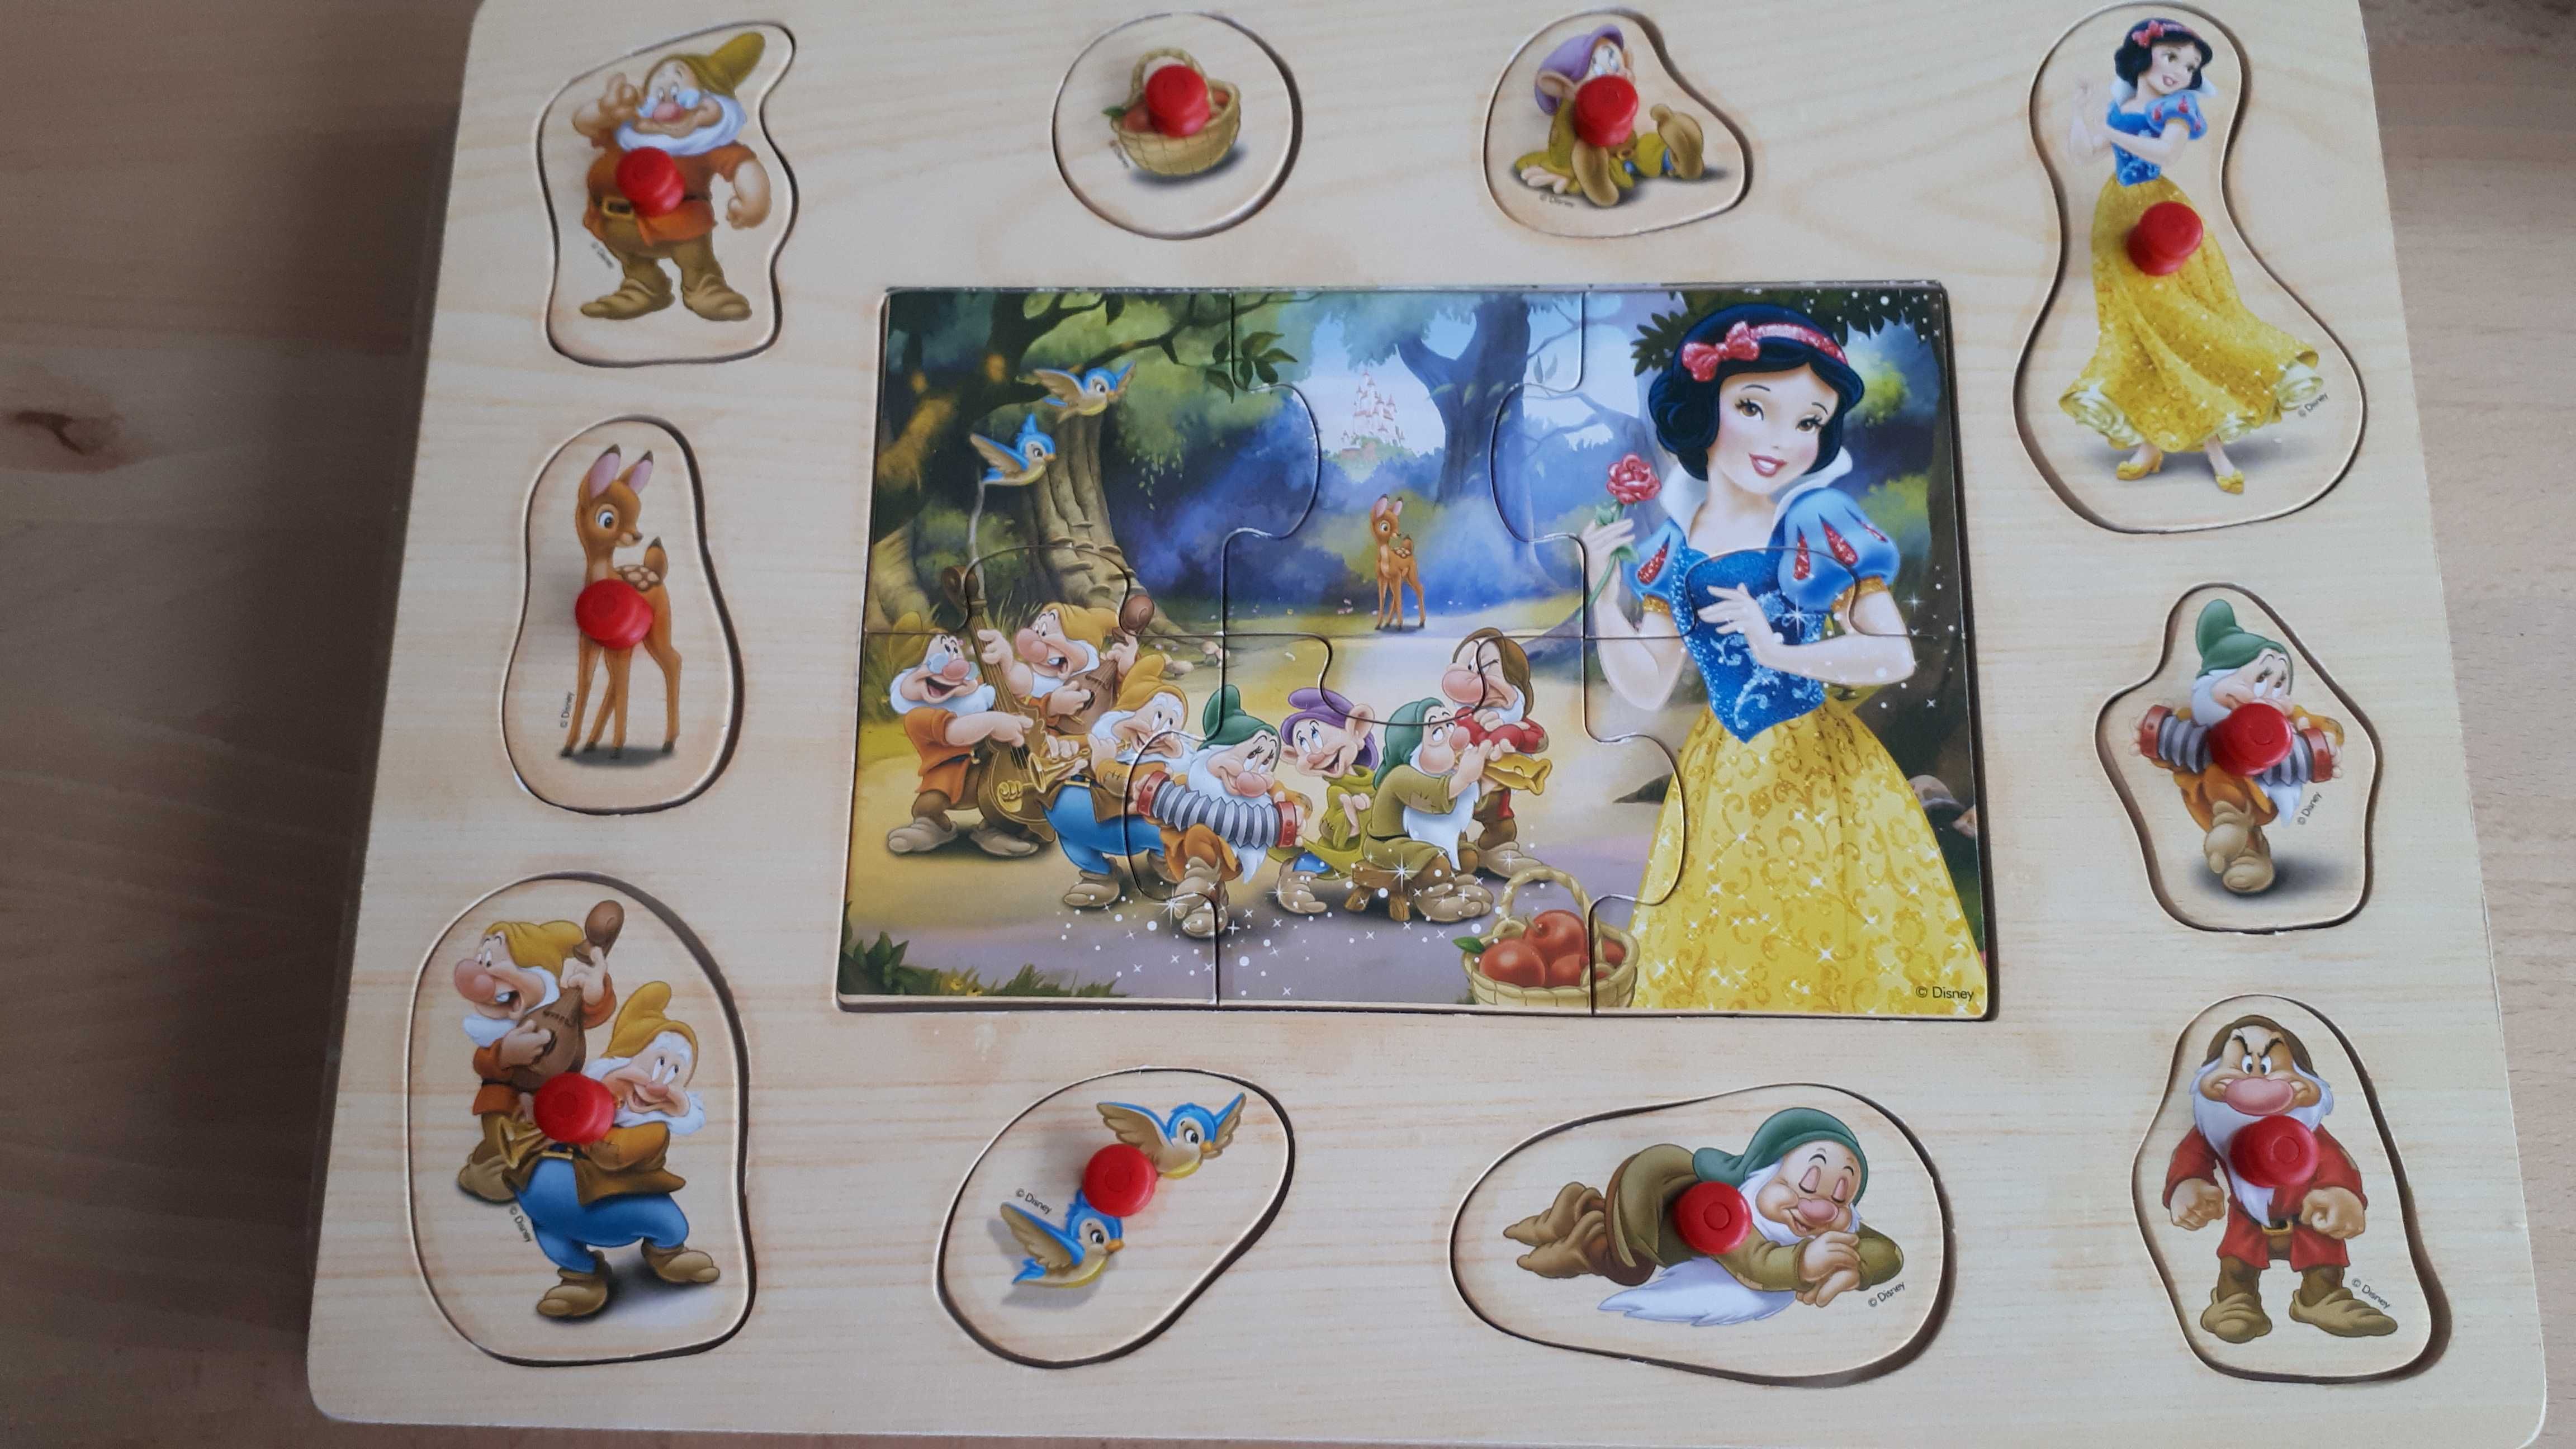 Kolorowa Piramidka i puzzle pensetkowe z Królewną Śnieżką dla dzieci